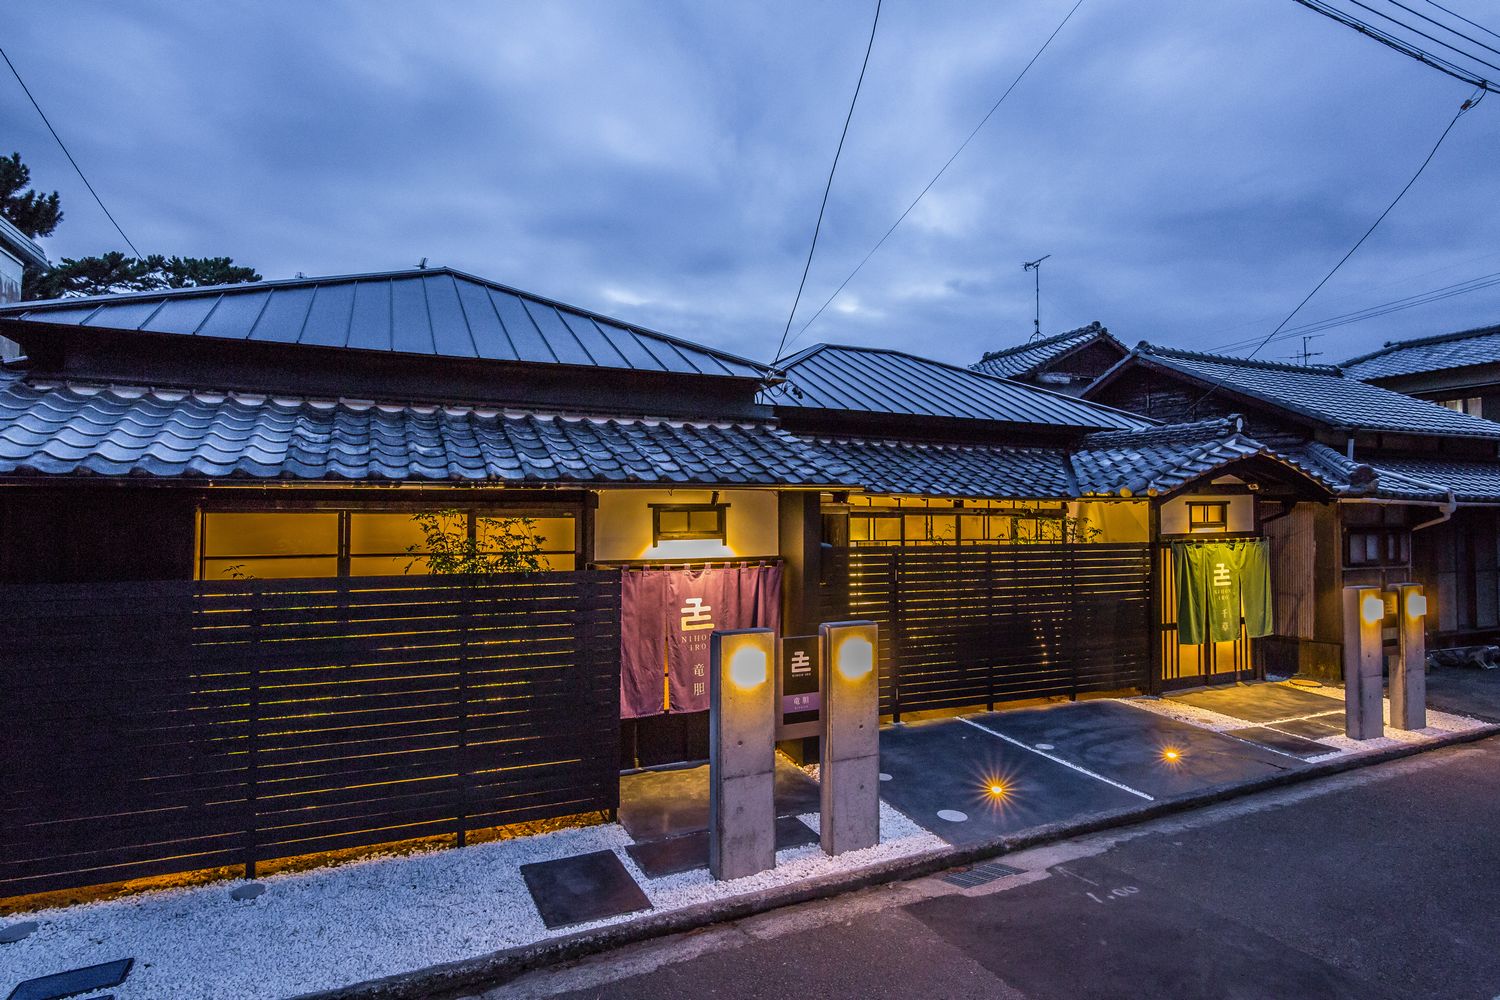 静岡県で長期滞在のビル泊に便利な分散型ホテル